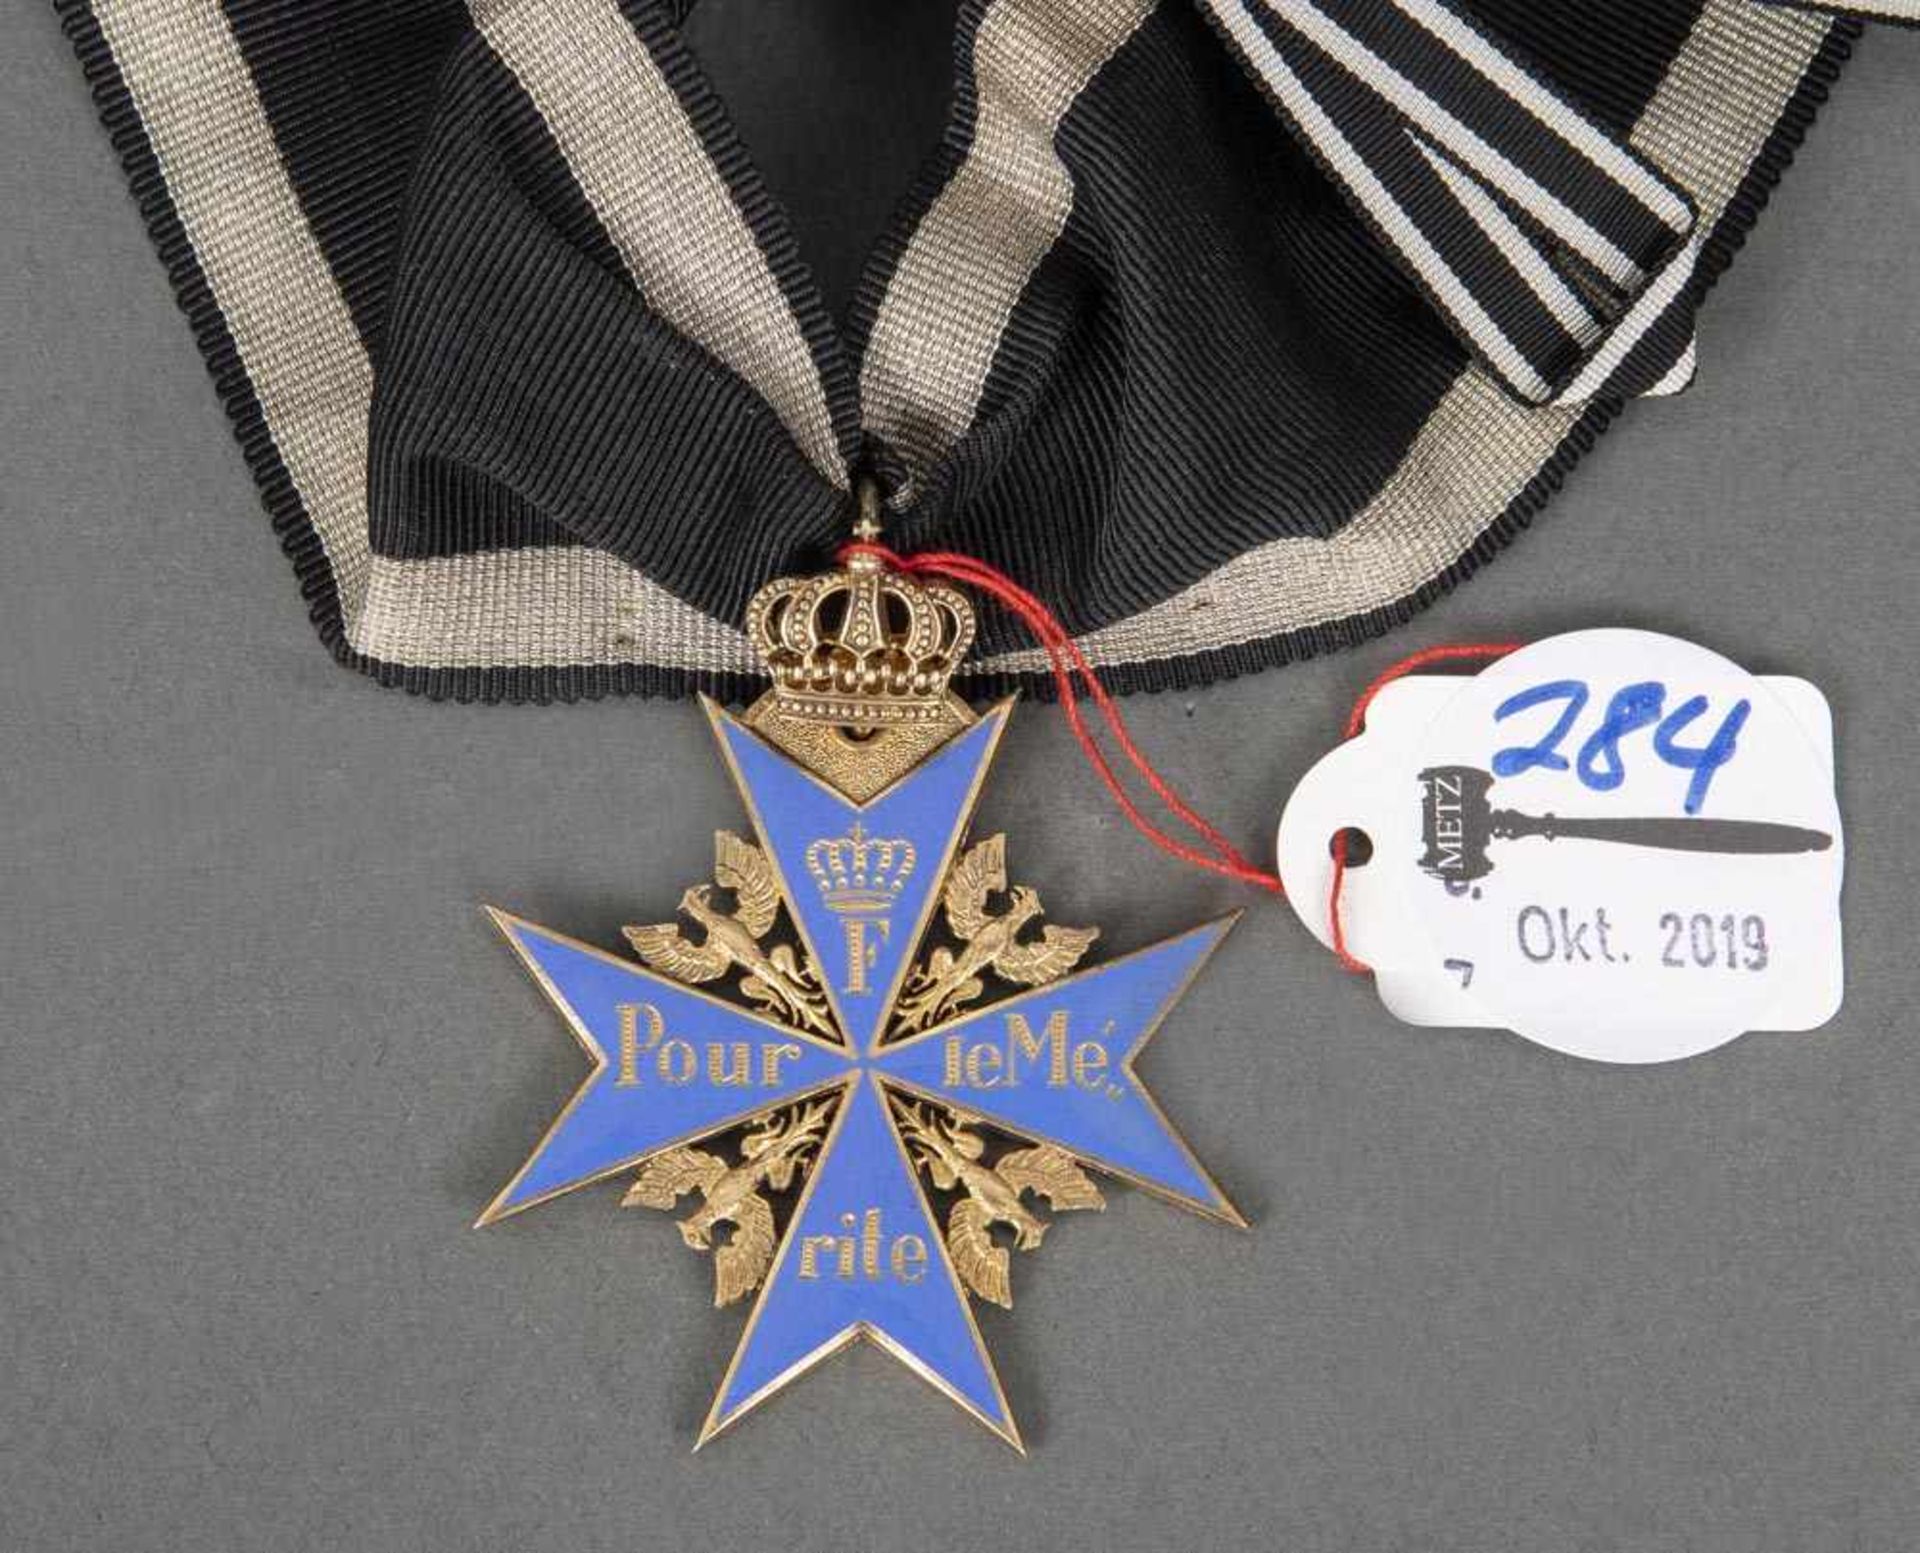 Preussischer "Pour le Merite"-Orden, Ordenskreuz mit Krone, mit Halsband. Metall, vergoldet und